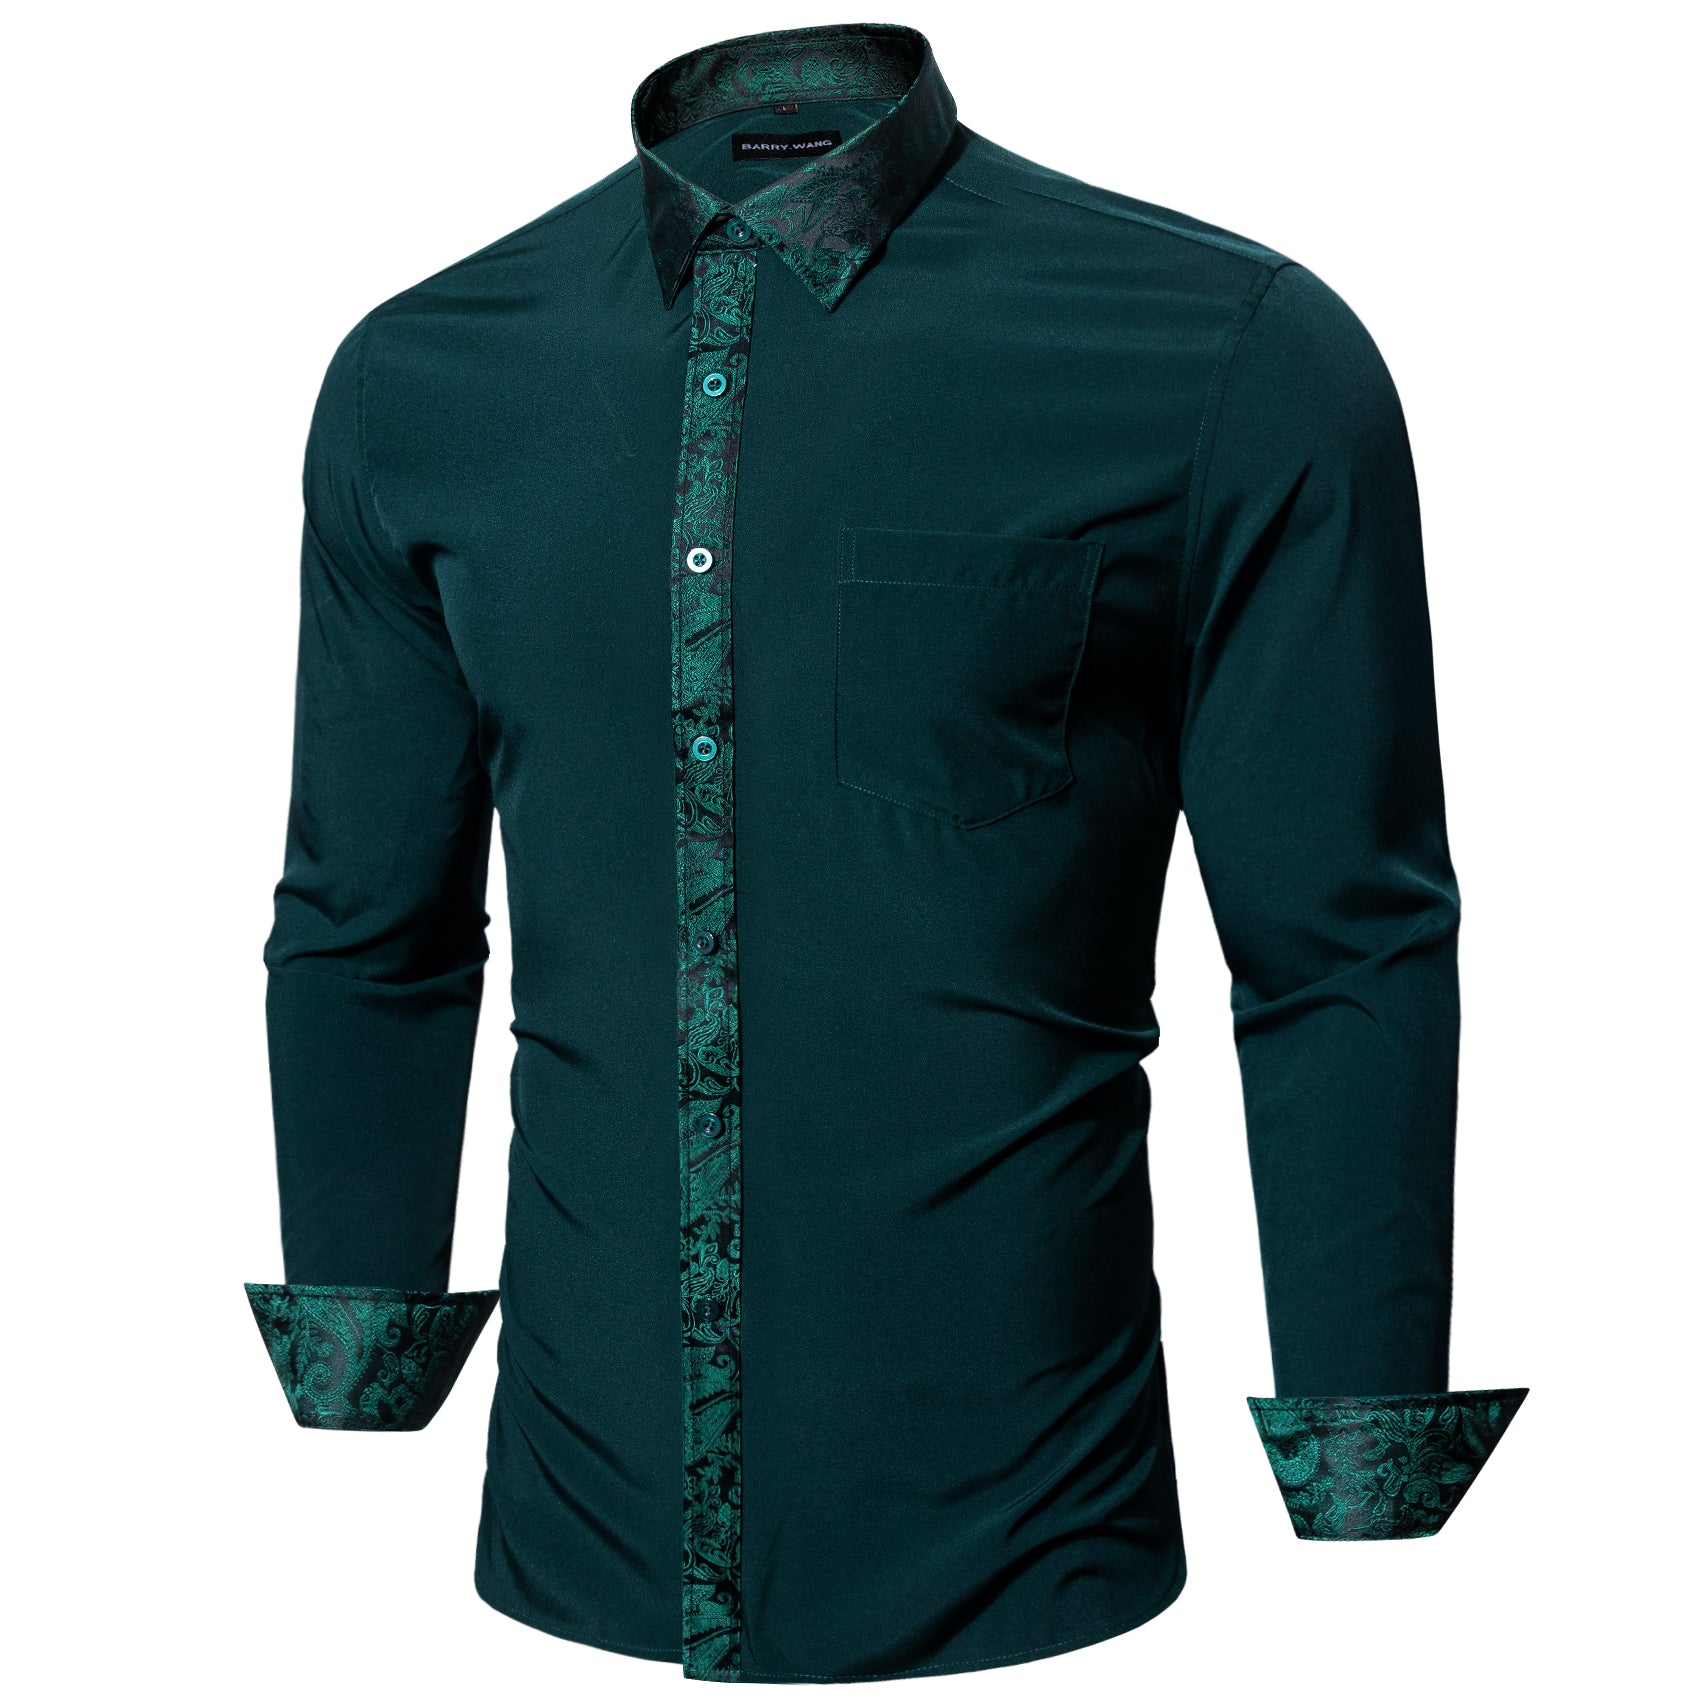 Barry.wang Button Down Shirt Dark Green Splicing Men's Dress Shirt Formal Business